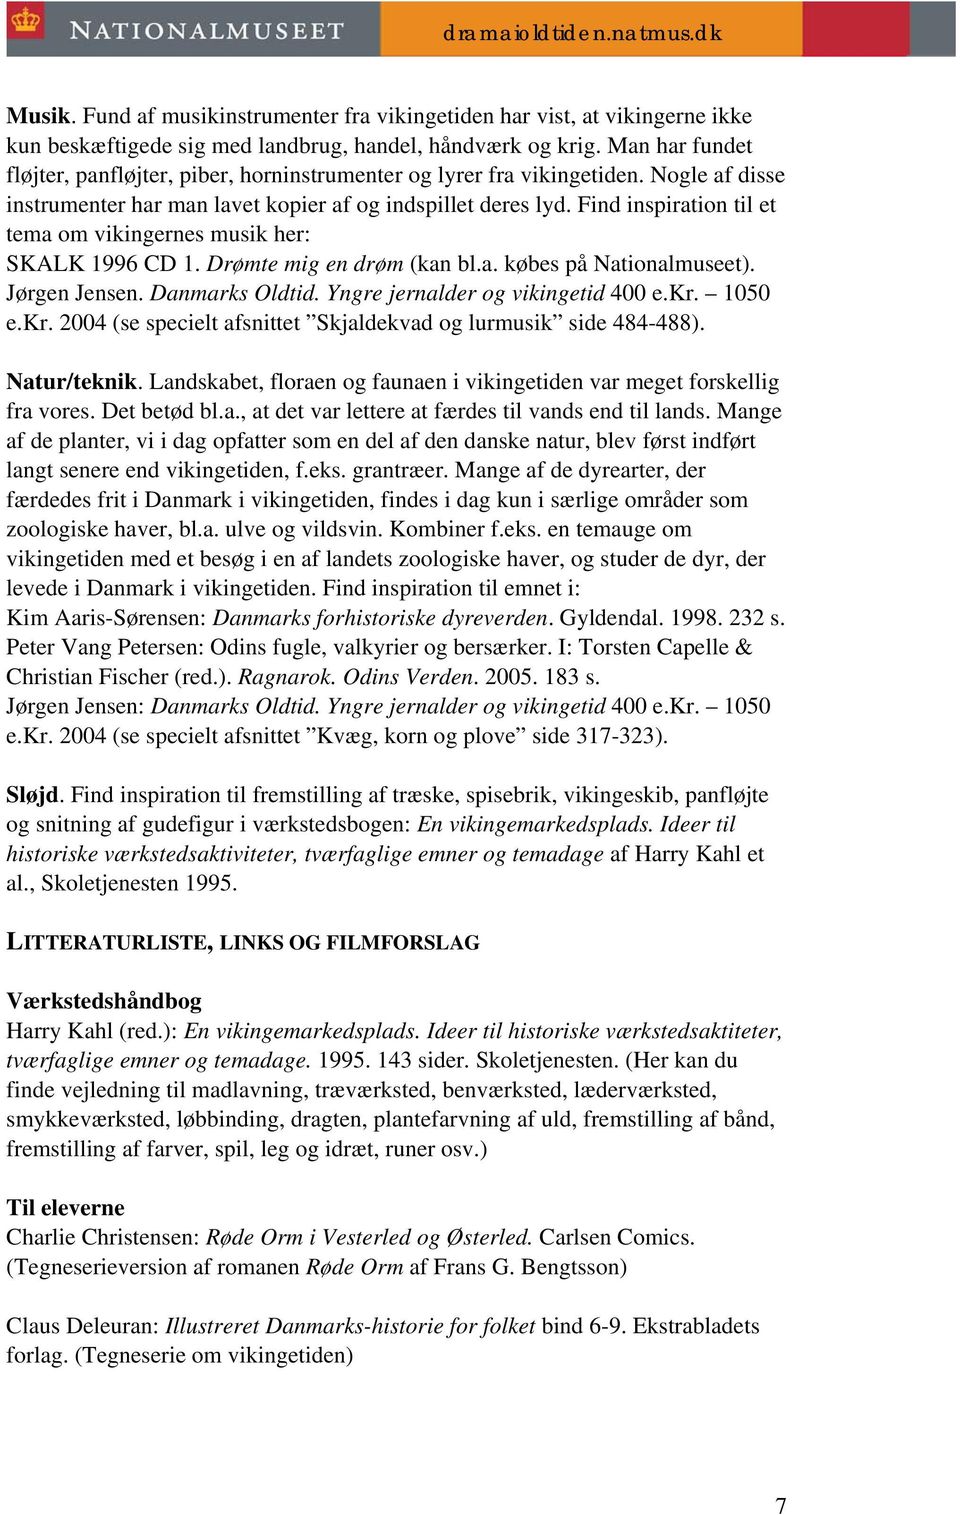 Find inspiration til et tema om vikingernes musik her: SKALK 1996 CD 1. Drømte mig en drøm (kan bl.a. købes på Nationalmuseet). Jørgen Jensen. Danmarks Oldtid. Yngre jernalder og vikingetid 400 e.kr.